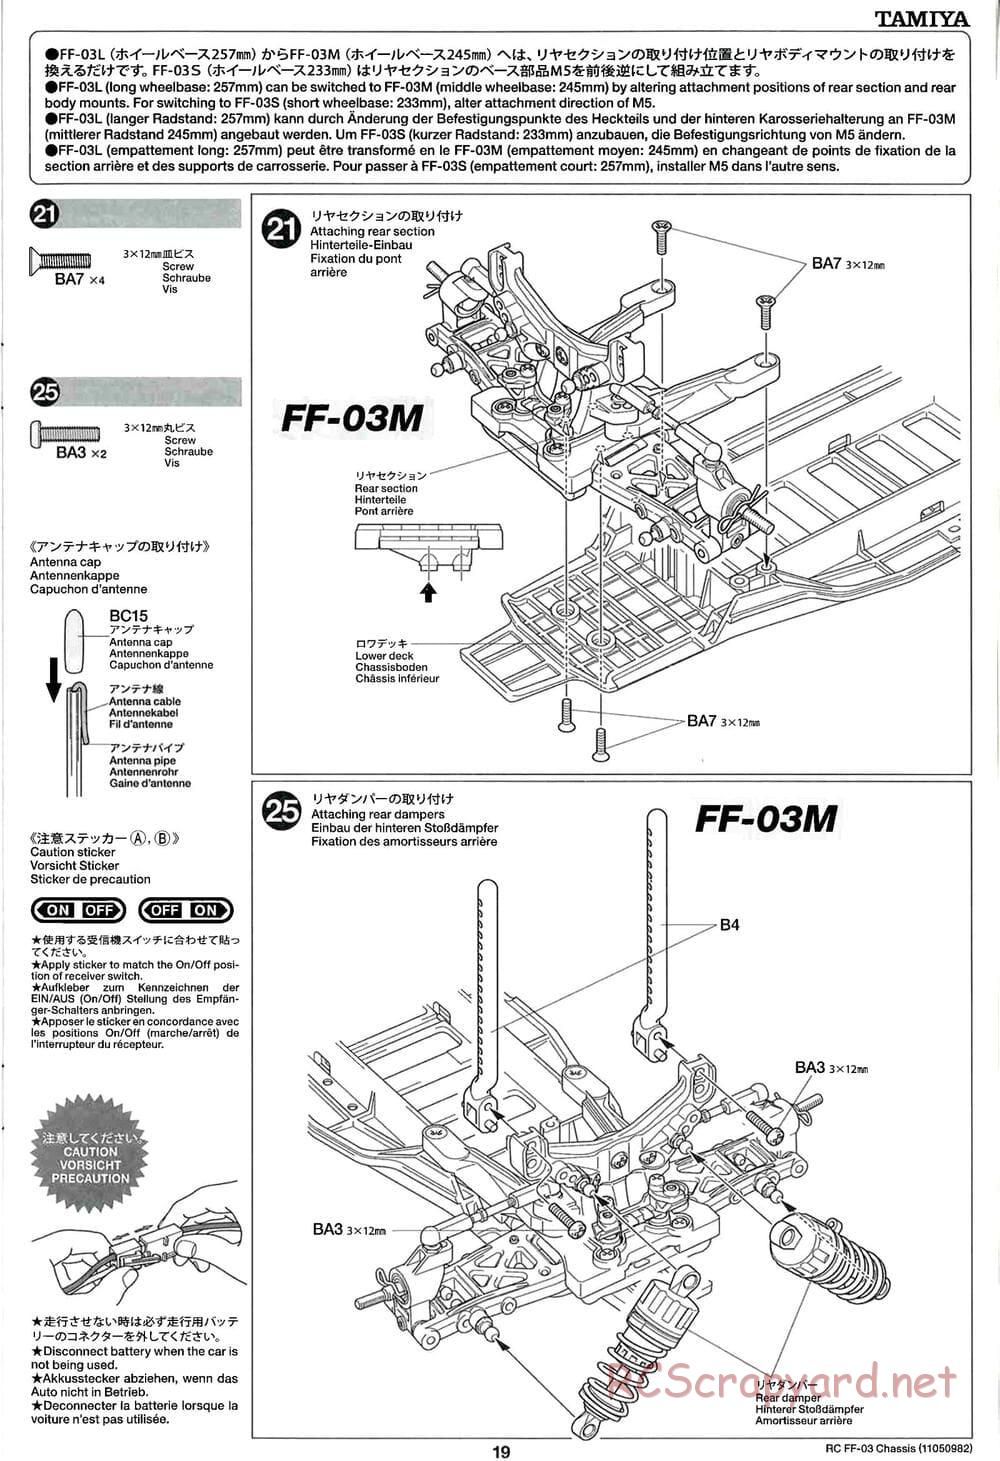 Tamiya - Honda CR-Z - FF-03 Chassis - Manual - Page 19